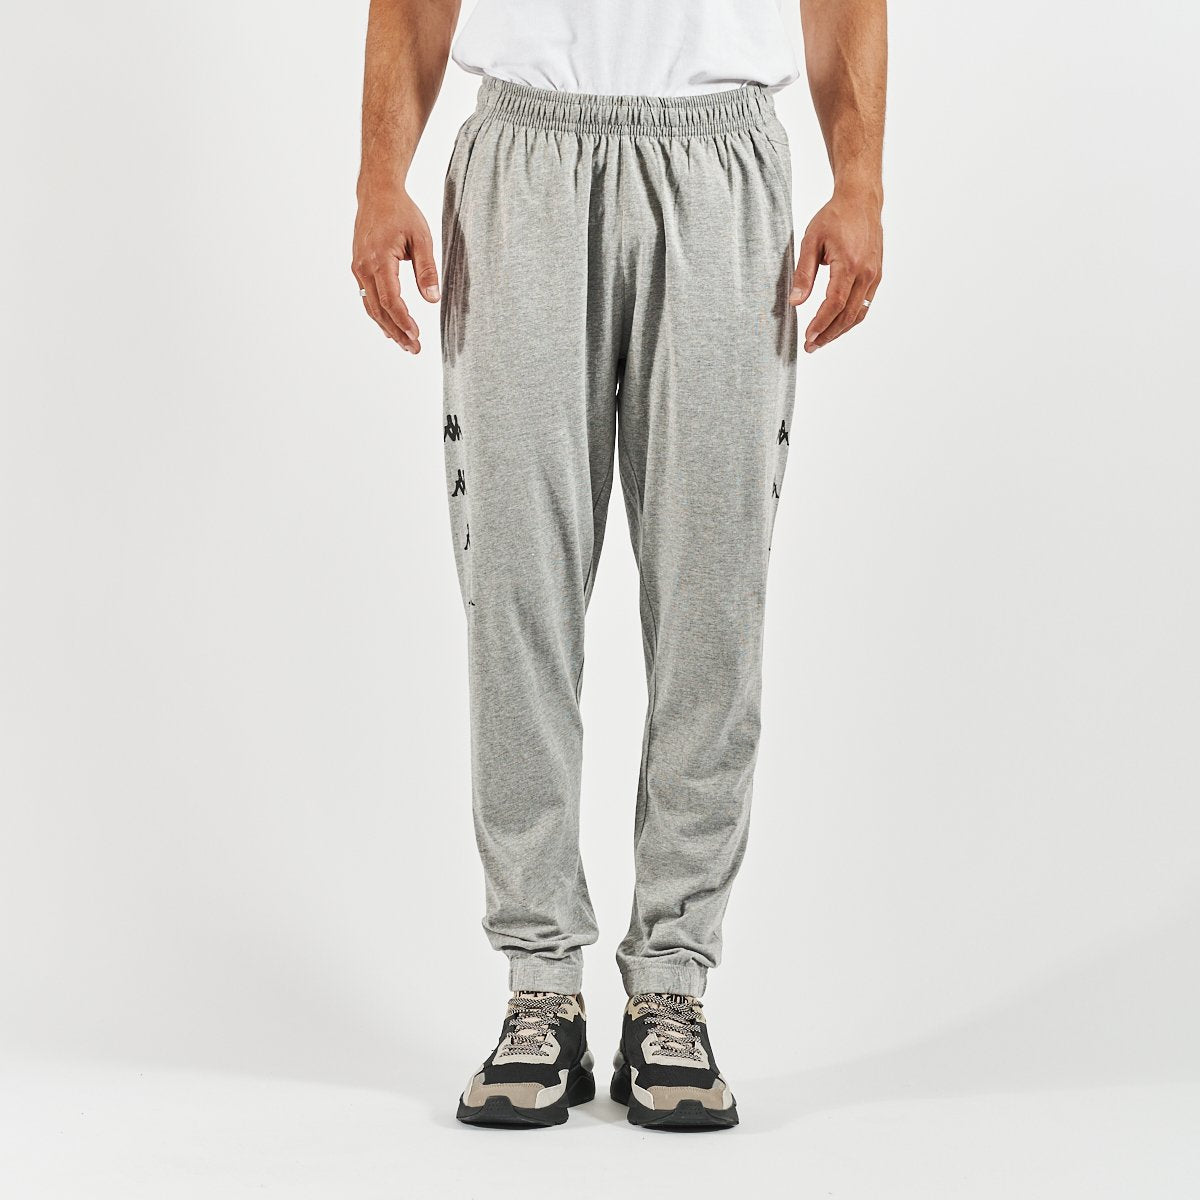 Pantalon Kolrik hombre gris - Imagen 1